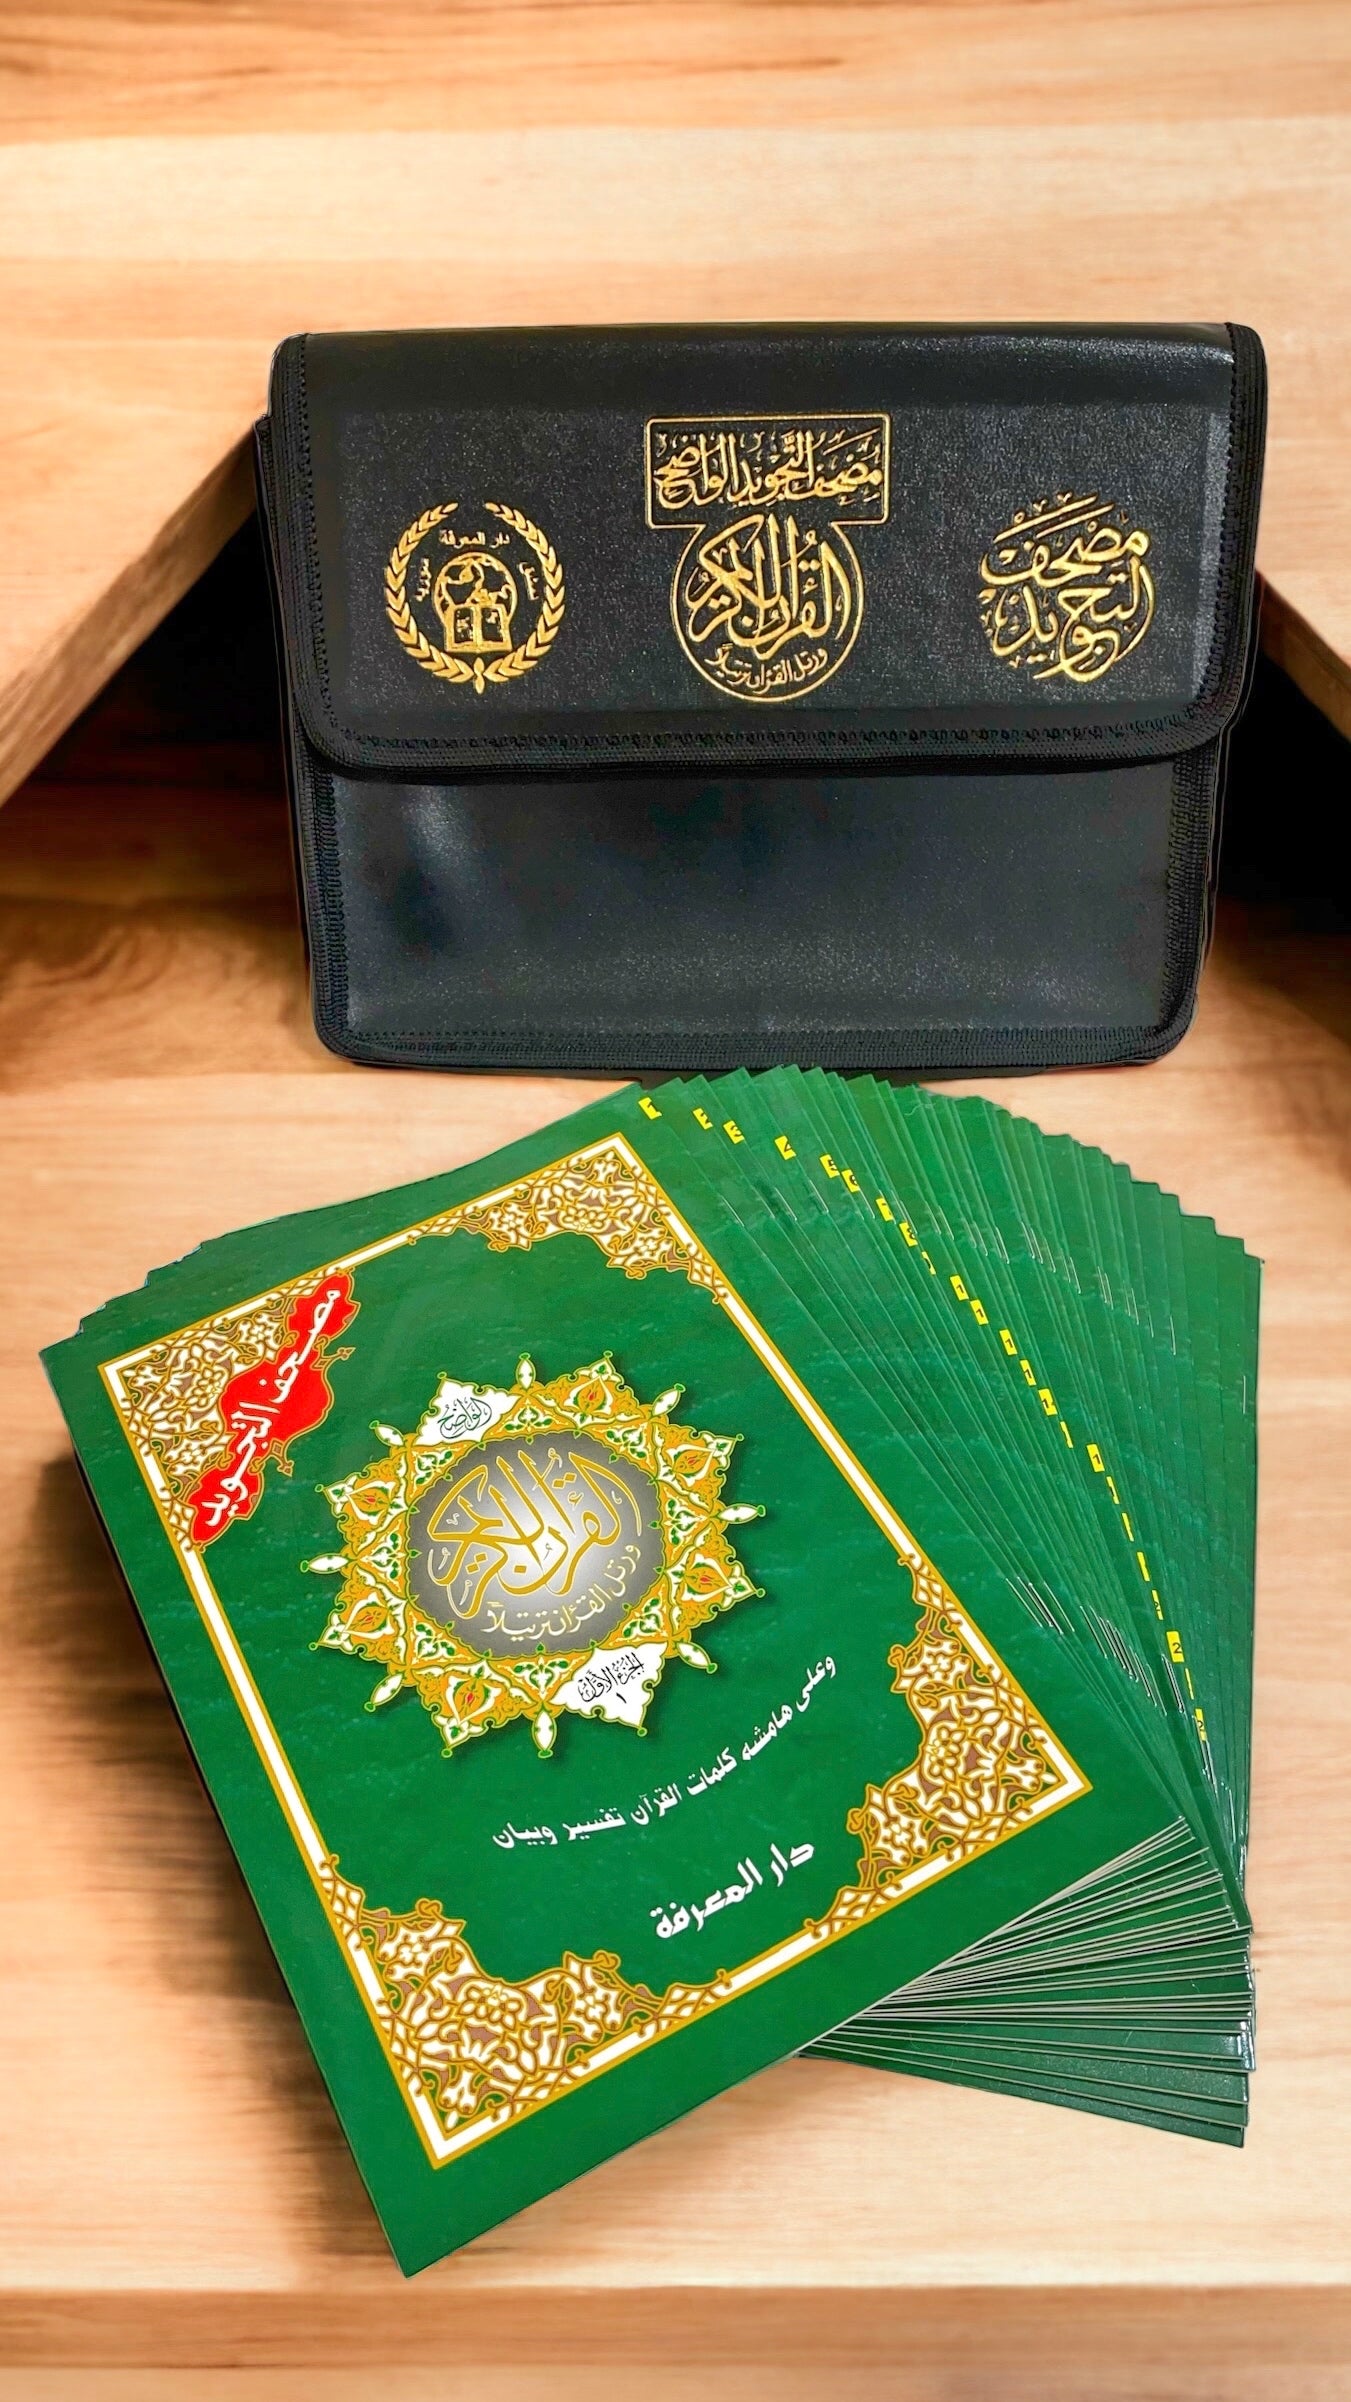 Corano tajwid khatma - hafs - Hijab Paradise - Corano è completo di tutte le 114 sure divise in 30 libricini